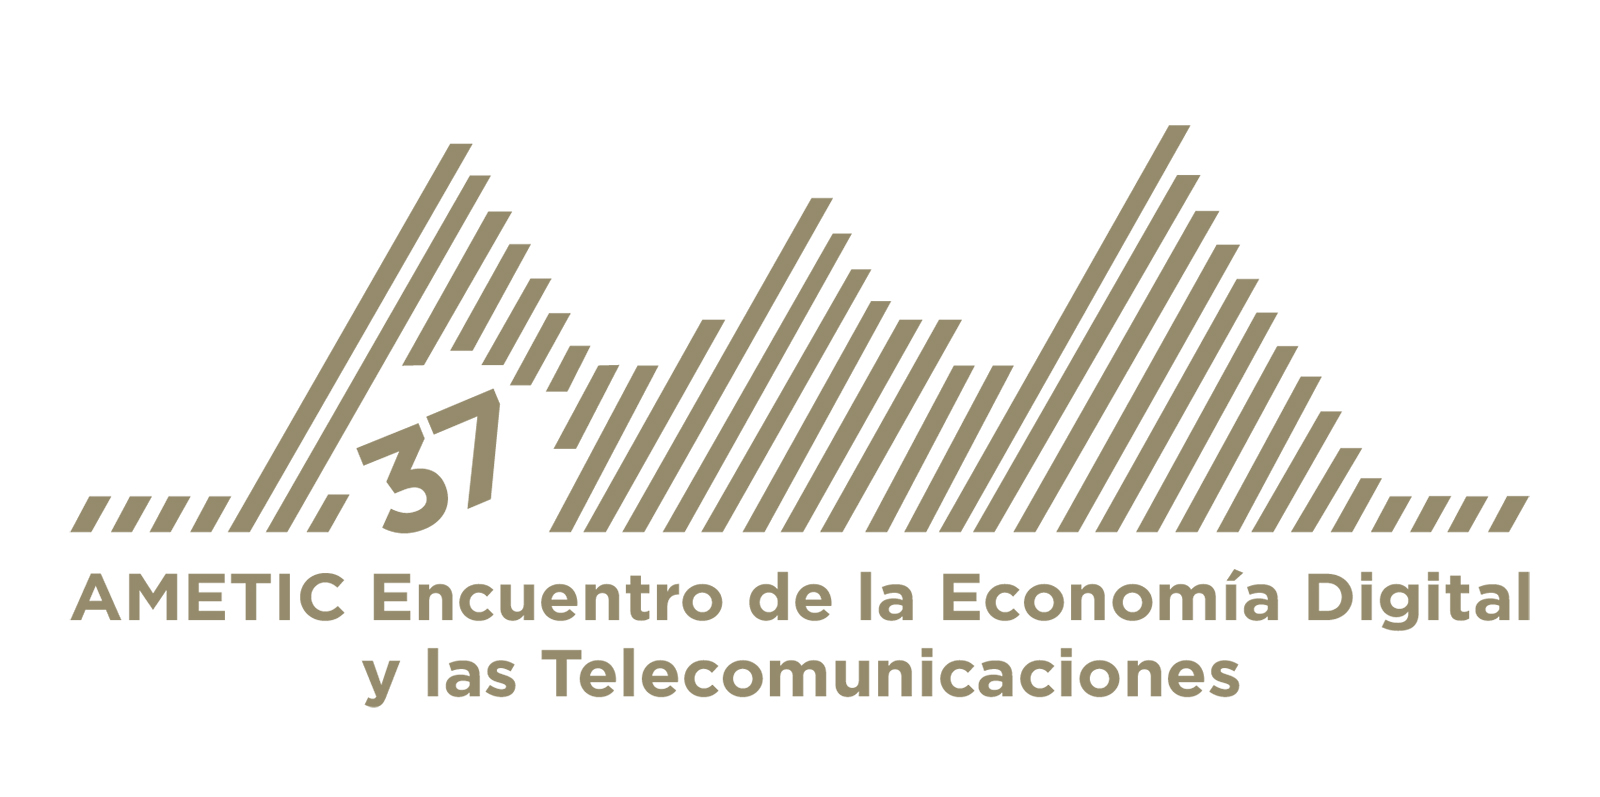 Cómo elegir una antena de TV para exteriores < Tech Takes Blog -   Colombia